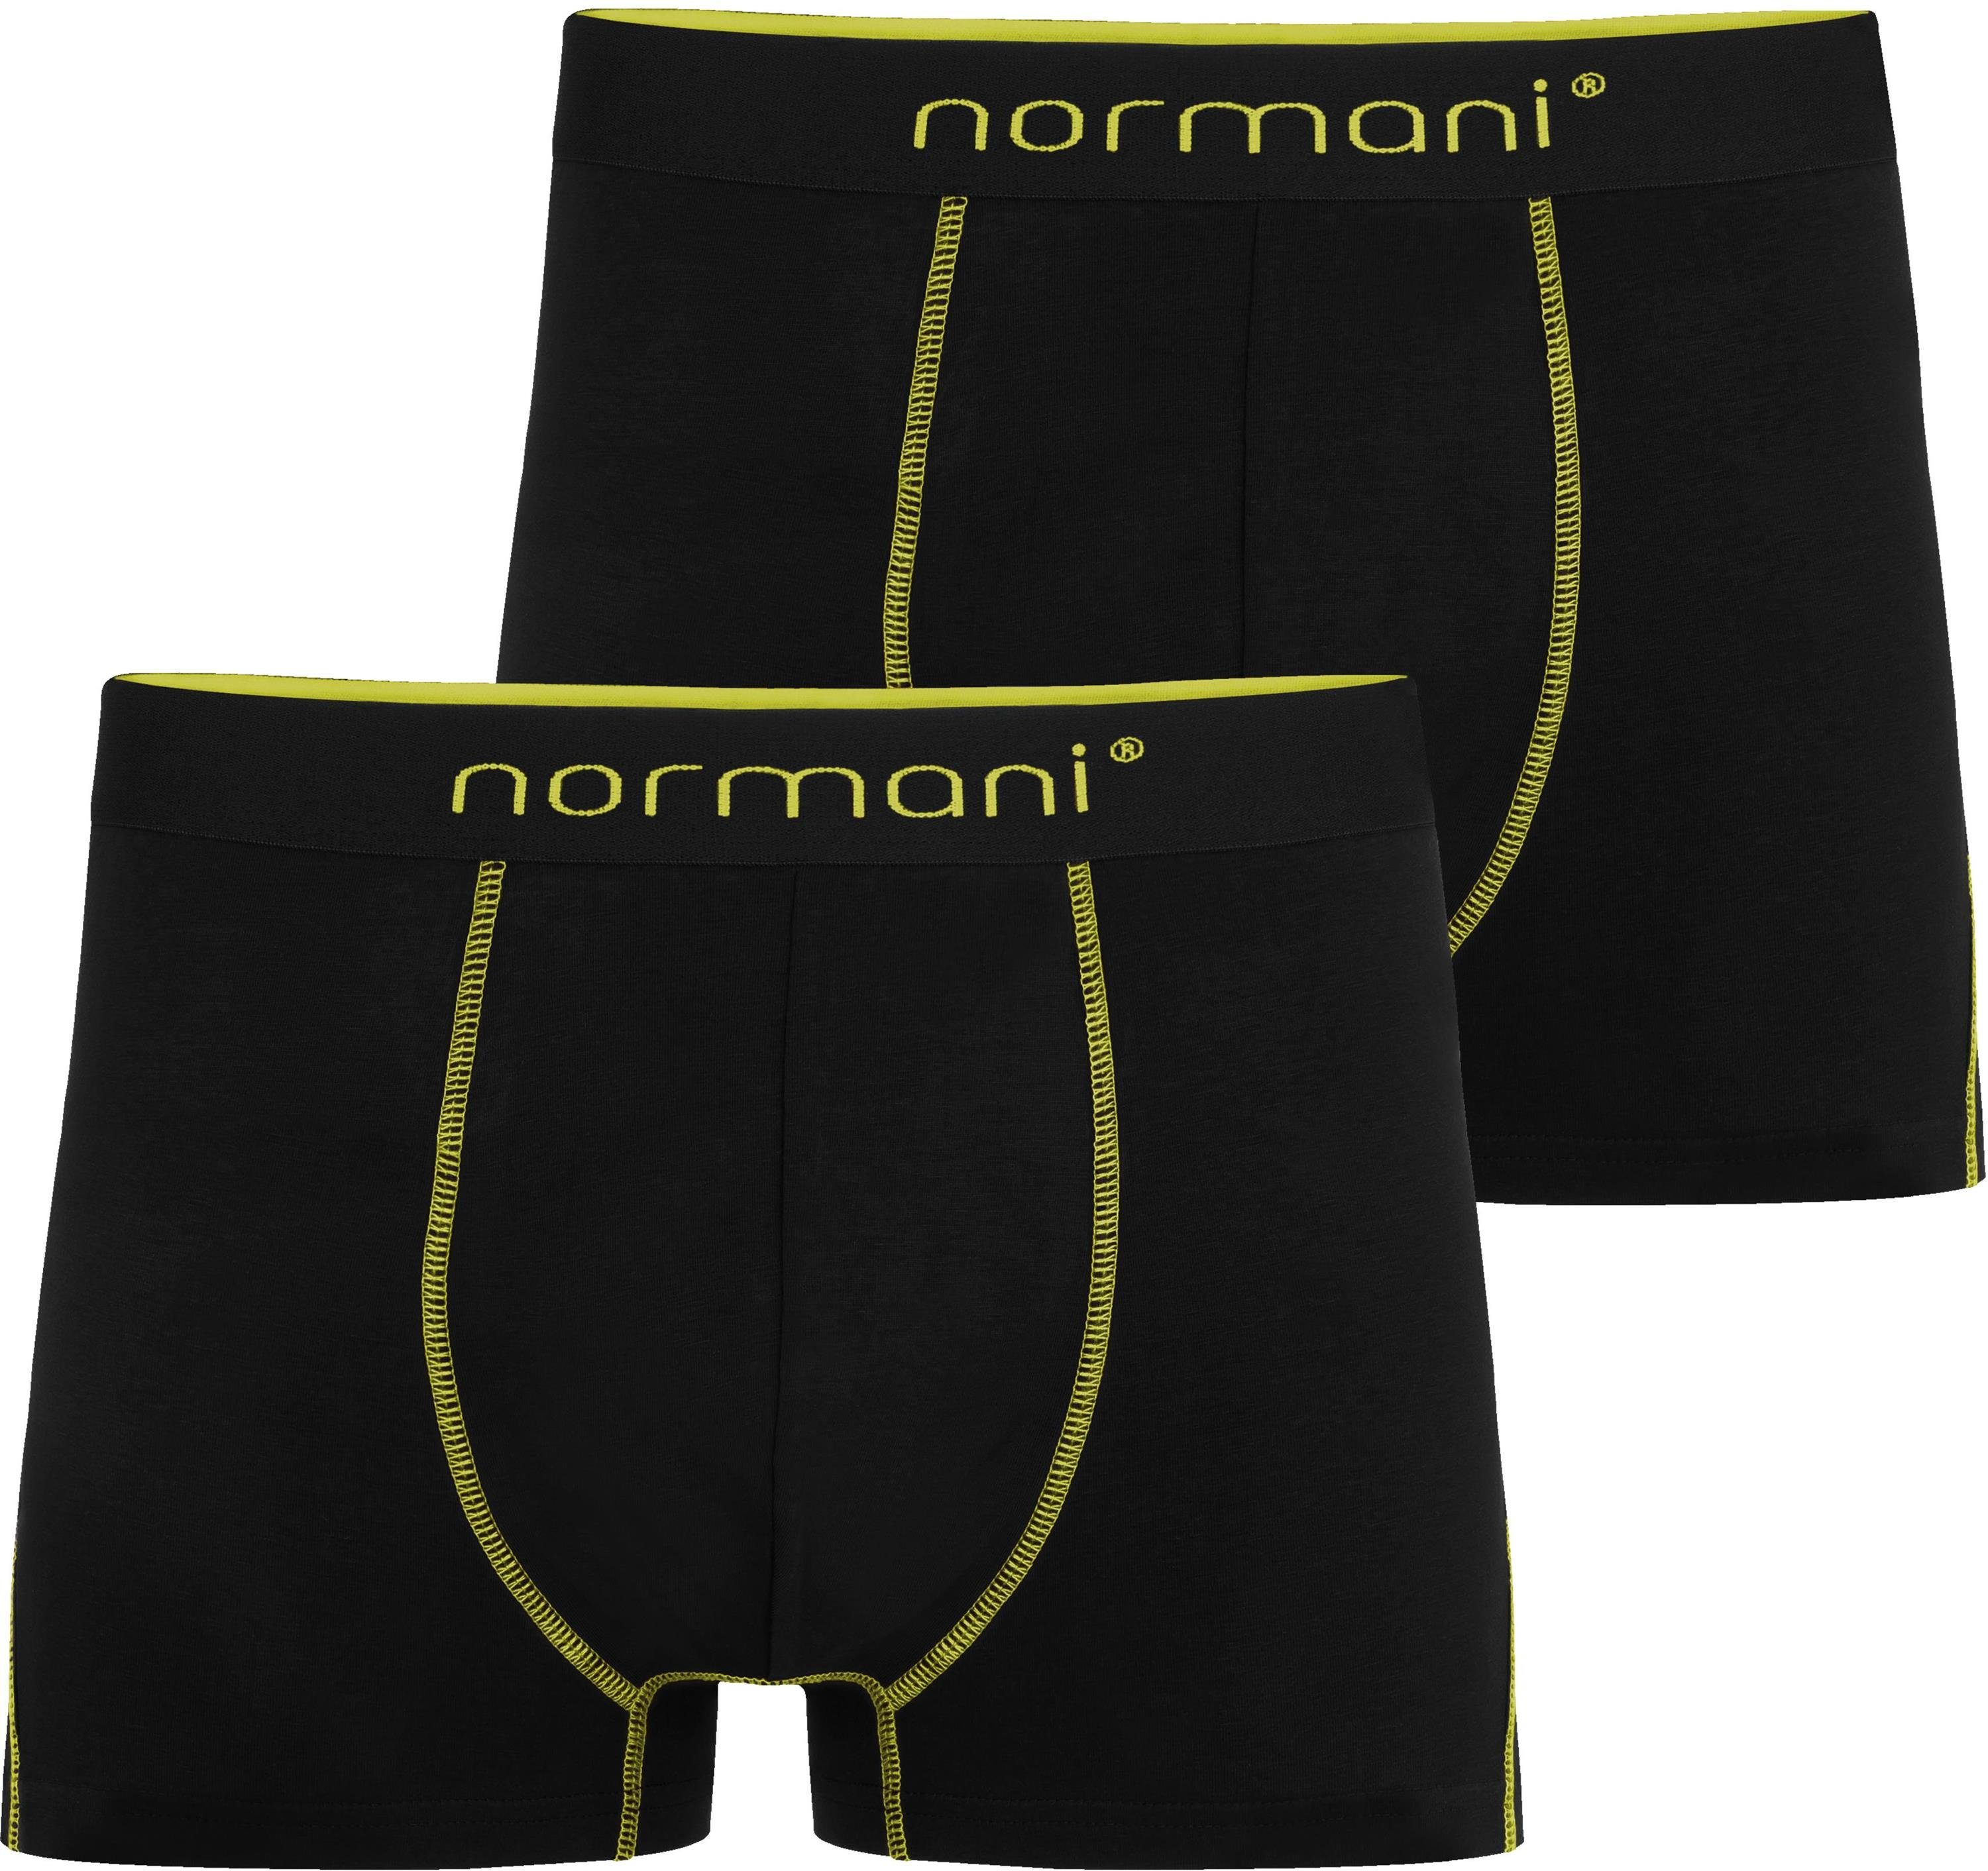 normani Boxershorts 2 Herren Boxershorts Männer Unterhose Gelb für Stanley aus atmungsaktiver Baumwolle